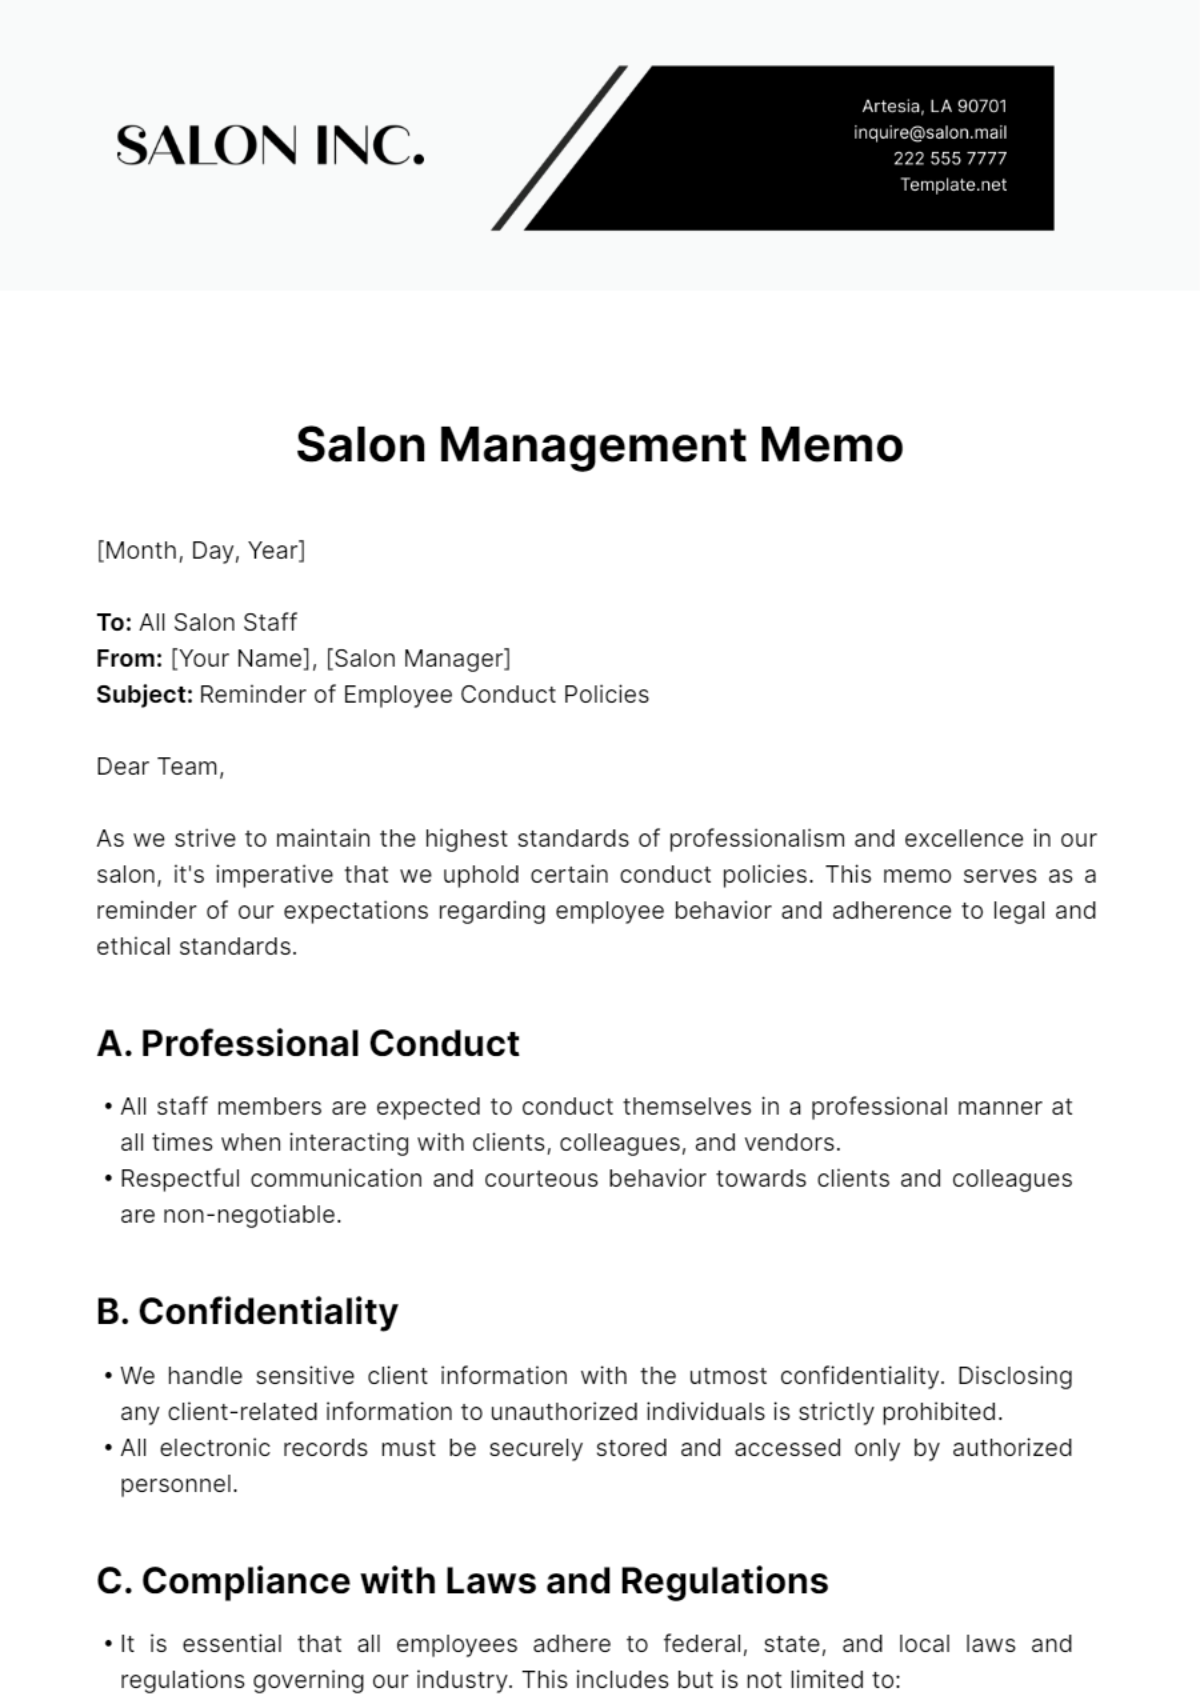 Salon Management Memo Template